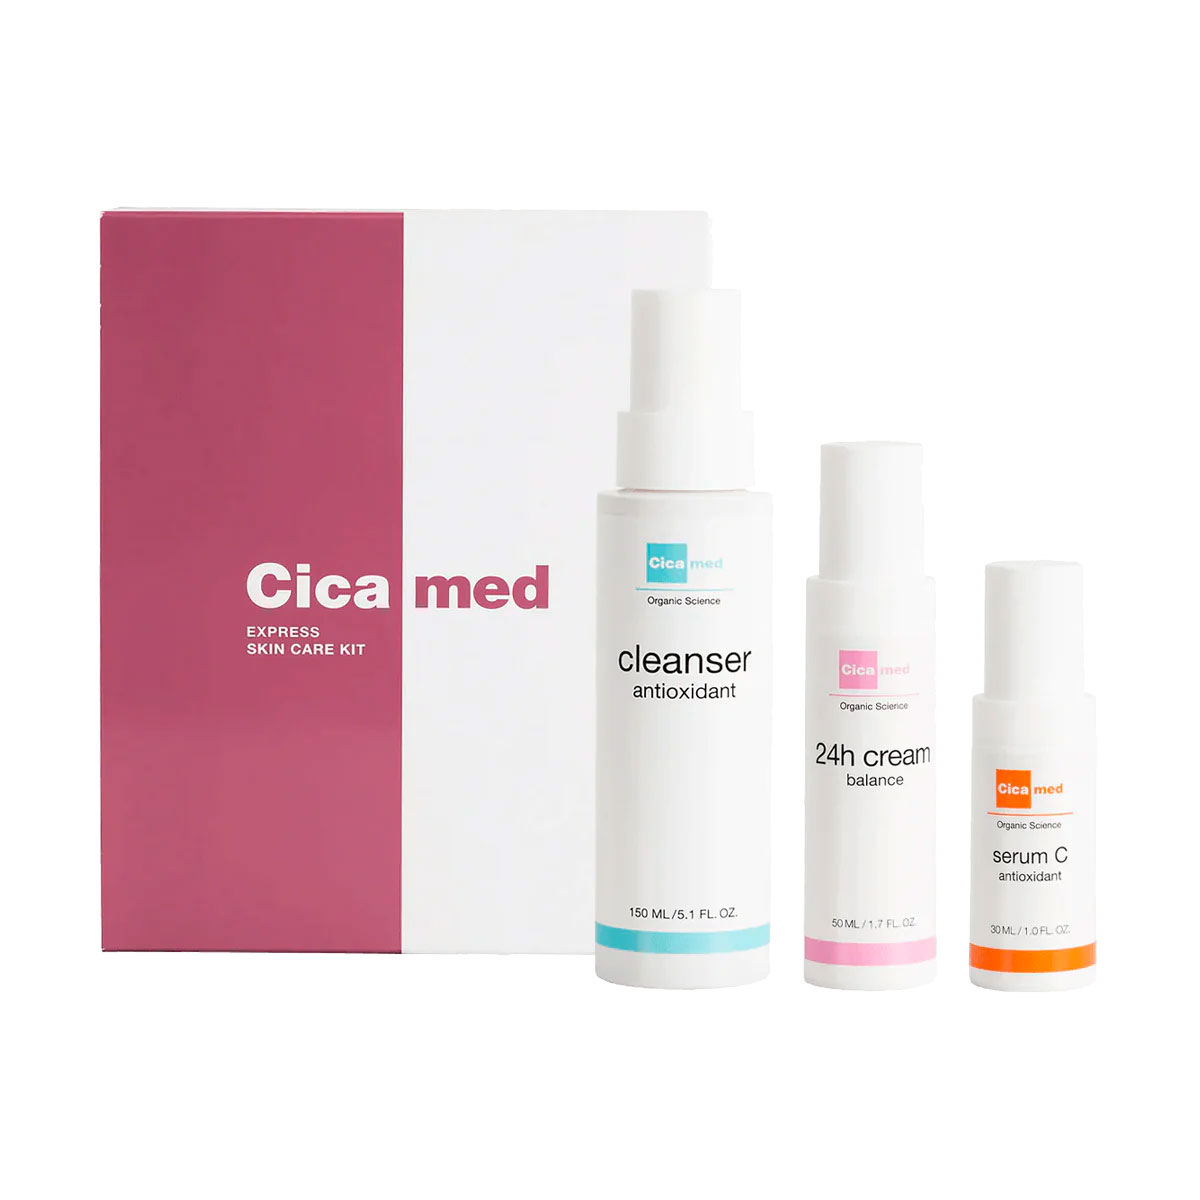 Cicamed Express Skincare kit